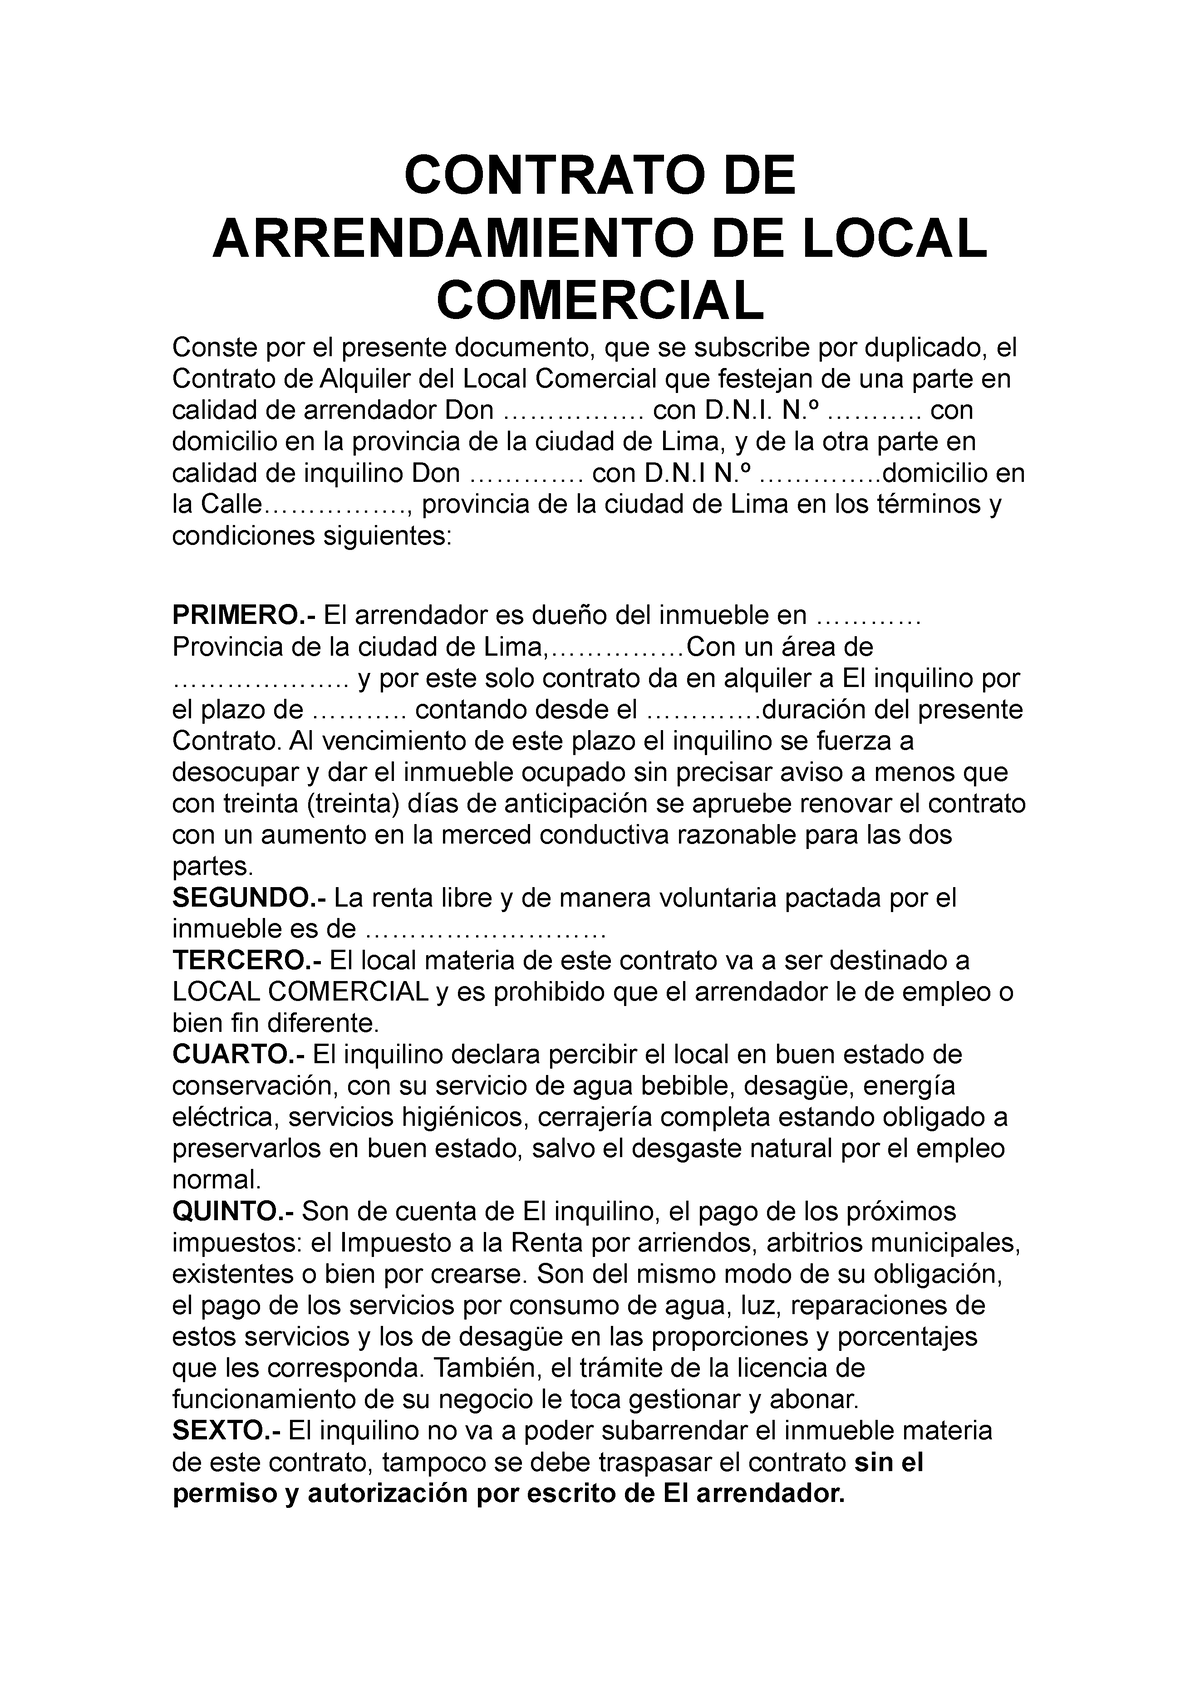 Modelo de contrato de alquiler de local simple - CONTRATO DE ARRENDAMIENTO  DE LOCAL COMERCIAL Conste - Studocu